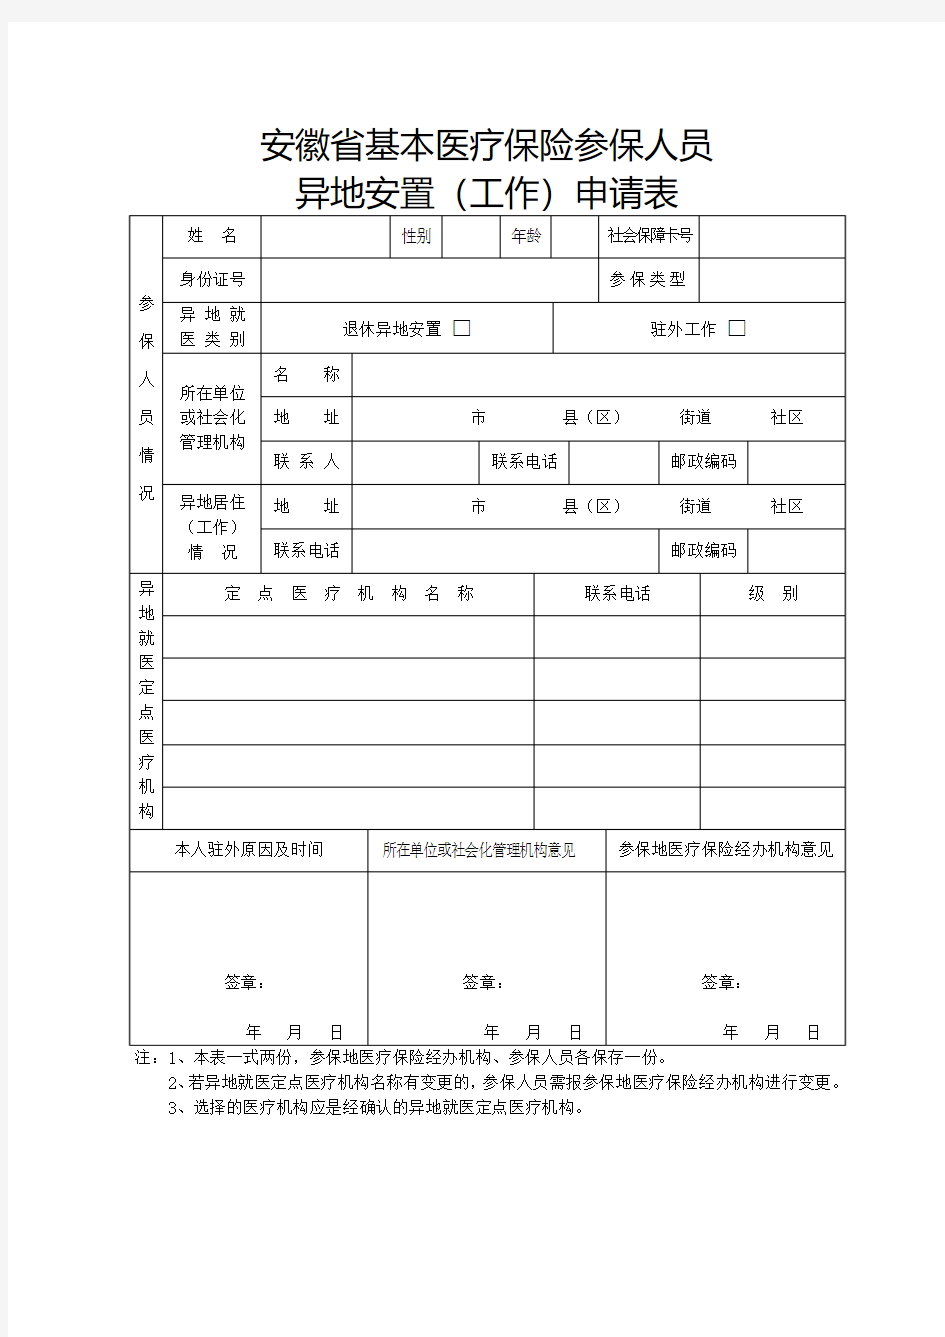 安徽省基本医疗保险参保人员异地安置(工作)申请表